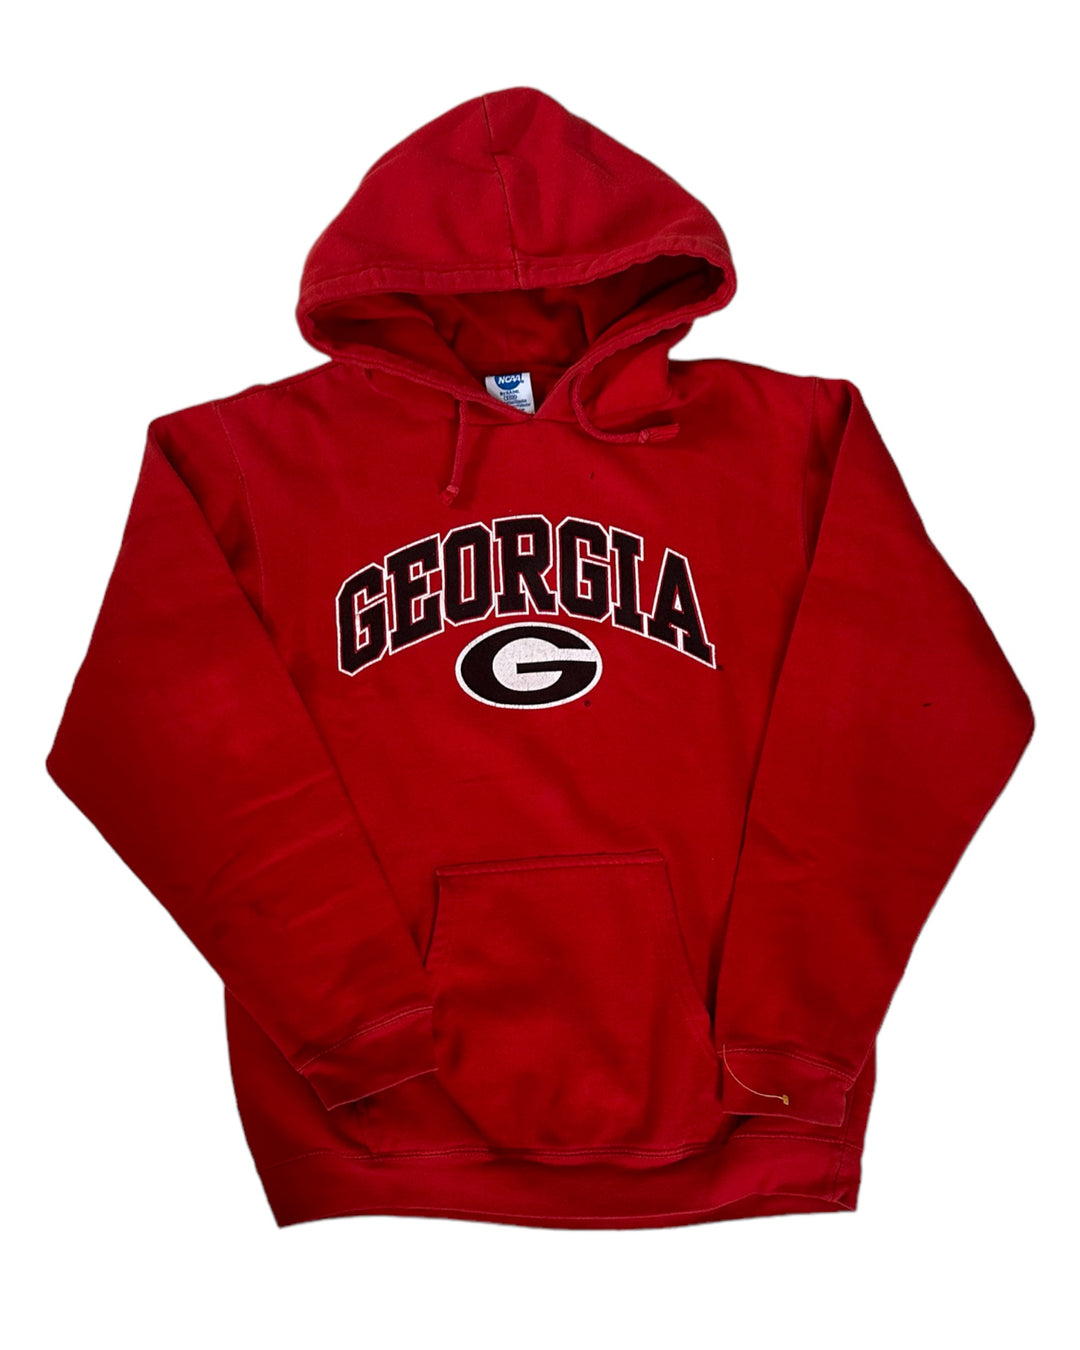 Georgia Vintage Sweatshirt